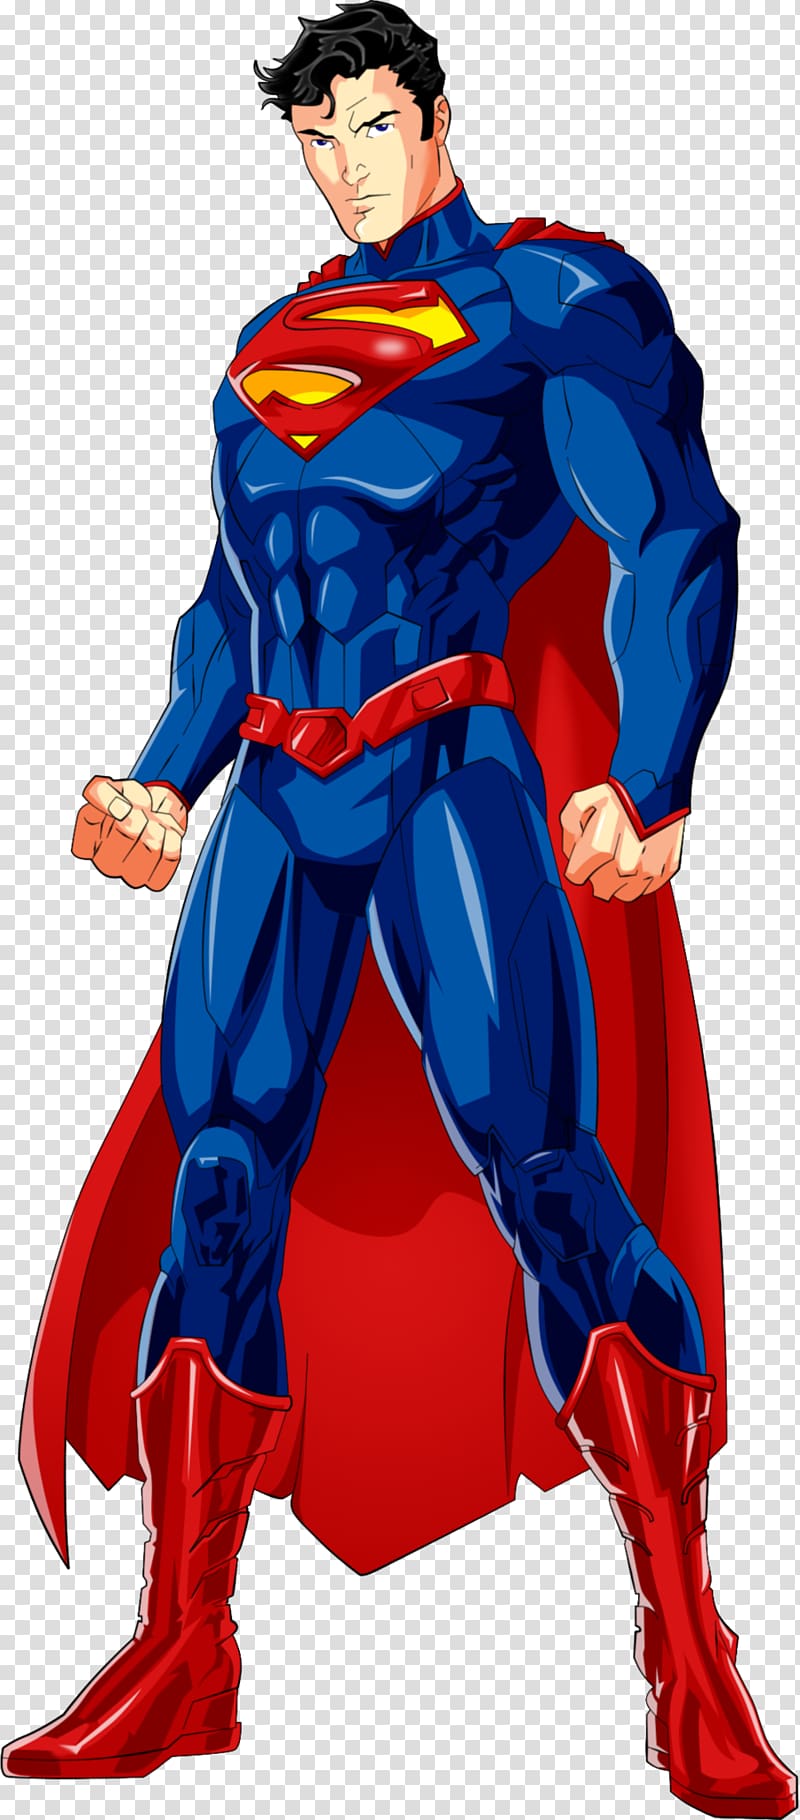 Superman illustration, Jim Lee Superman: The Animated Series Batman The